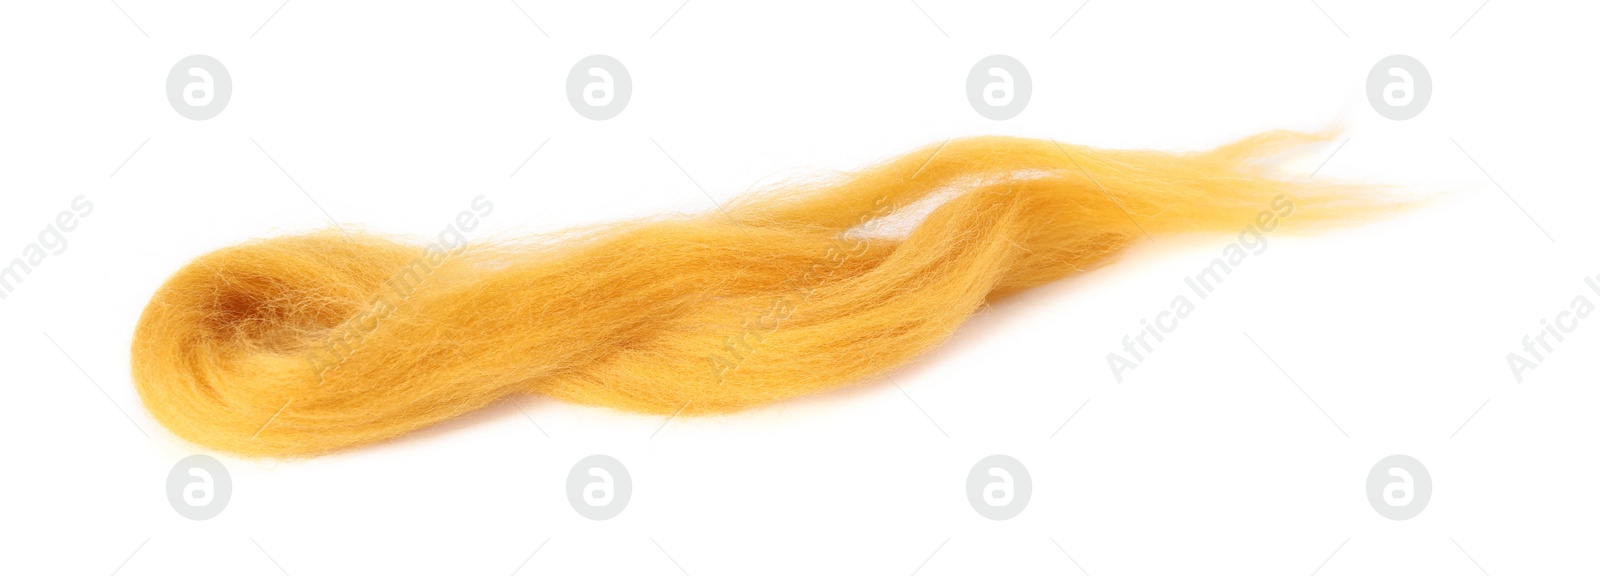 Photo of One orange felting wool isolated on white